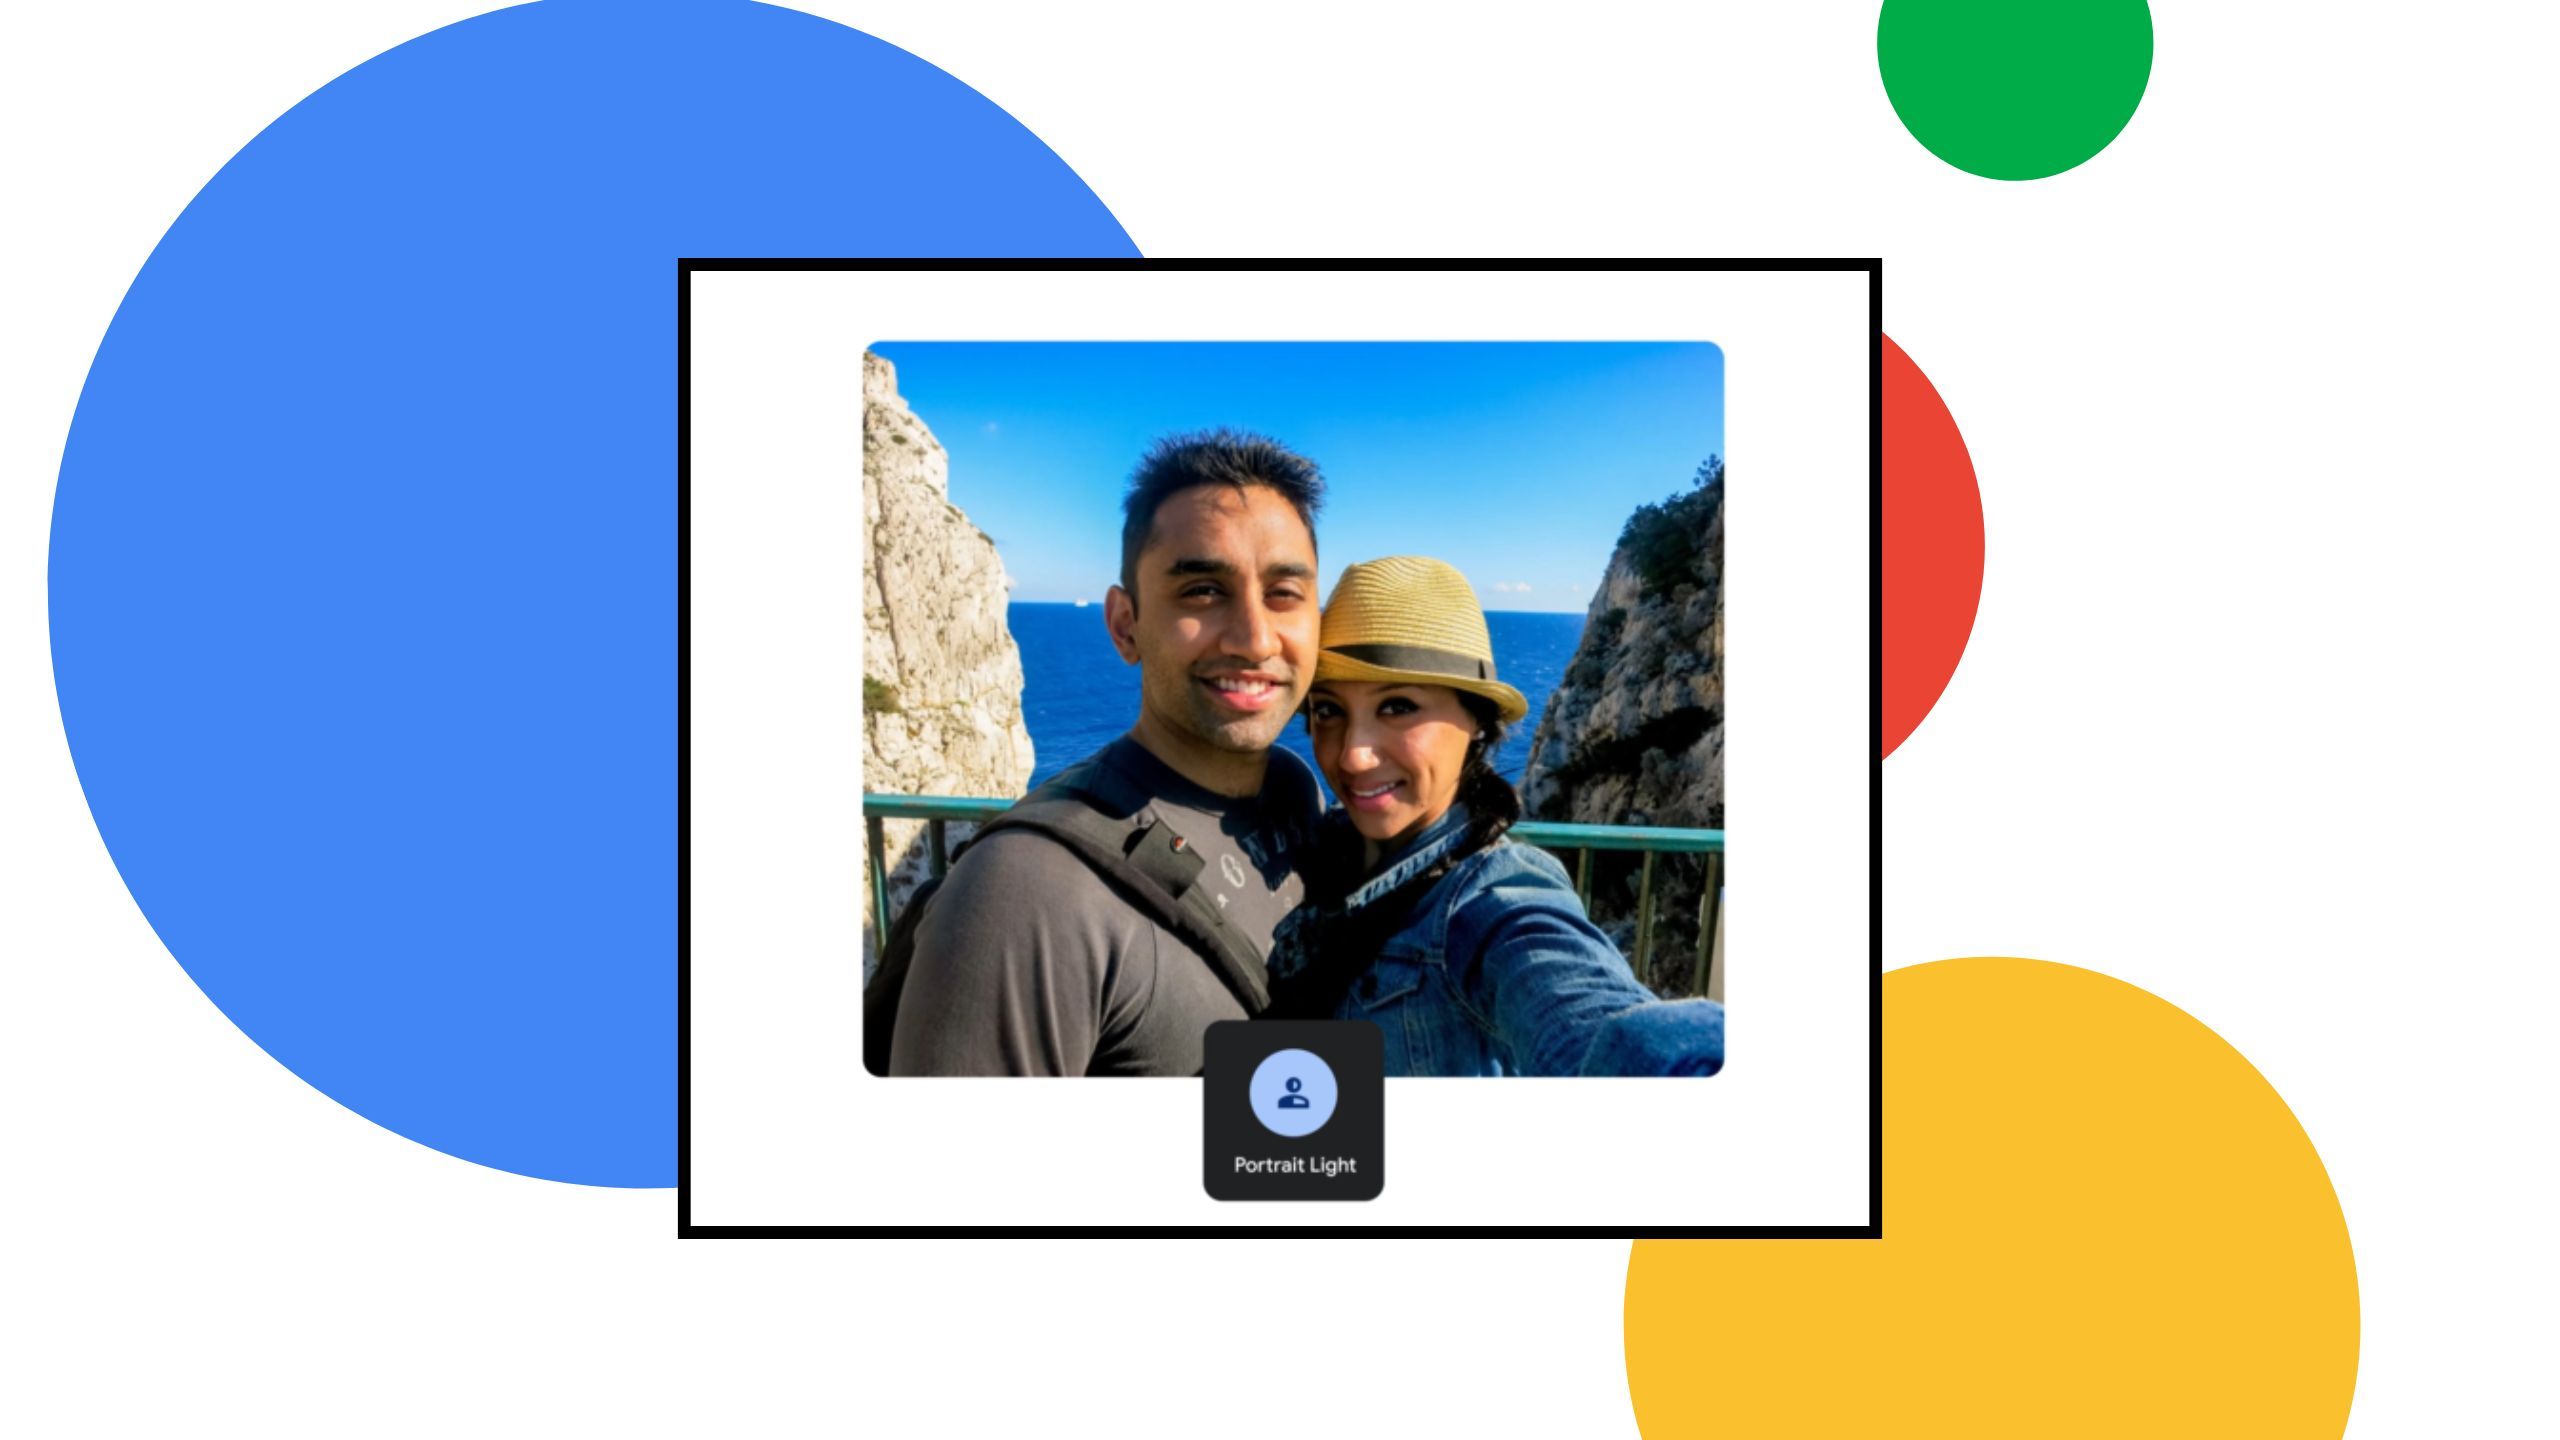 Google Photos AI Portrait Light